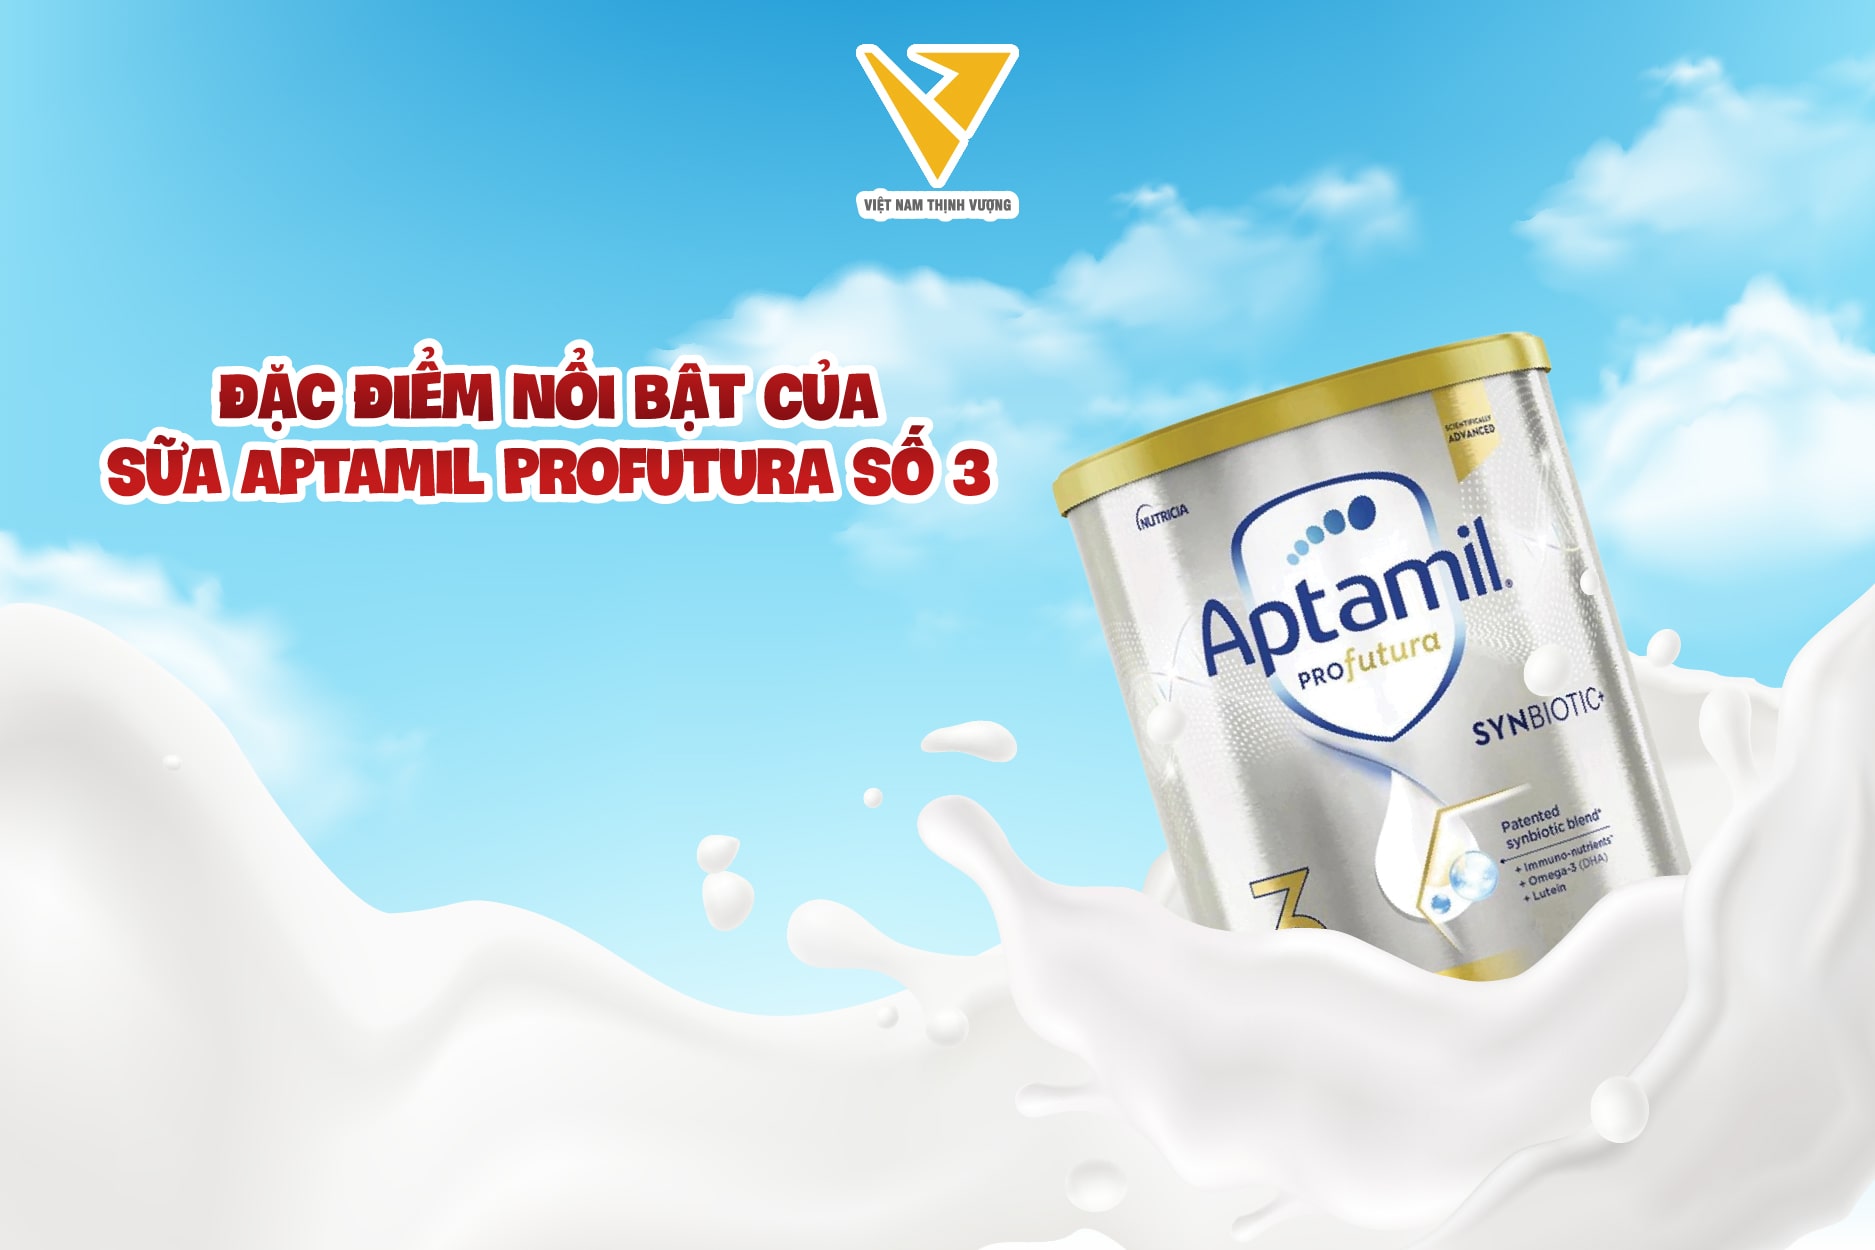 Sữa Aptamil Profutura với công thức riêng biệt, không chỉ là nguồn dinh dưỡng cho bé mà còn là yếu tố giúp bé phát triển toàn diện